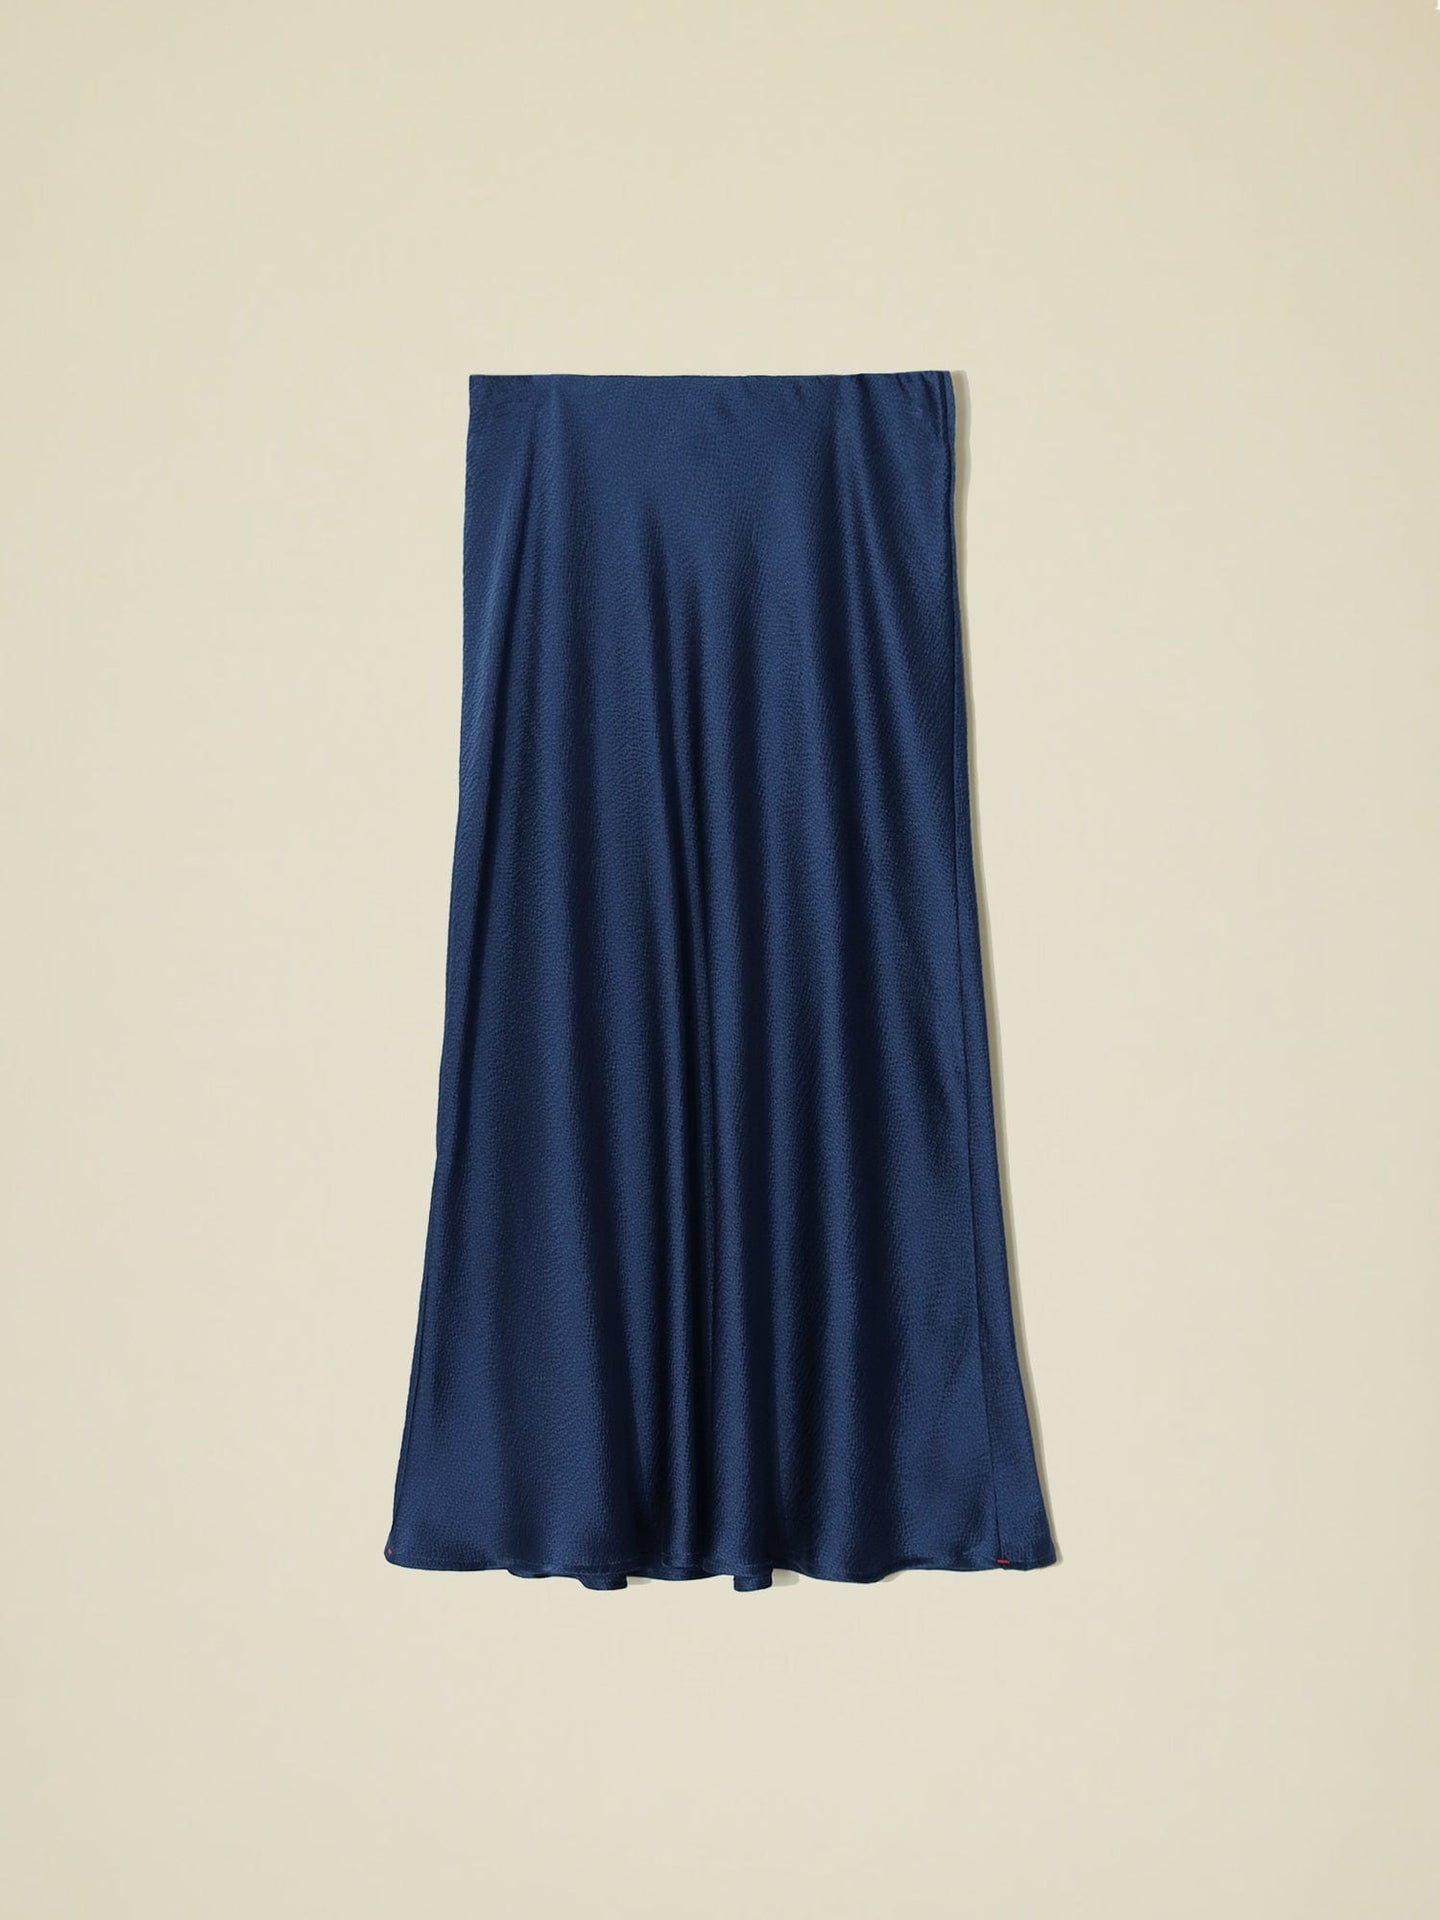 Xirena Skirt Star Sapphire Audrina Skirt